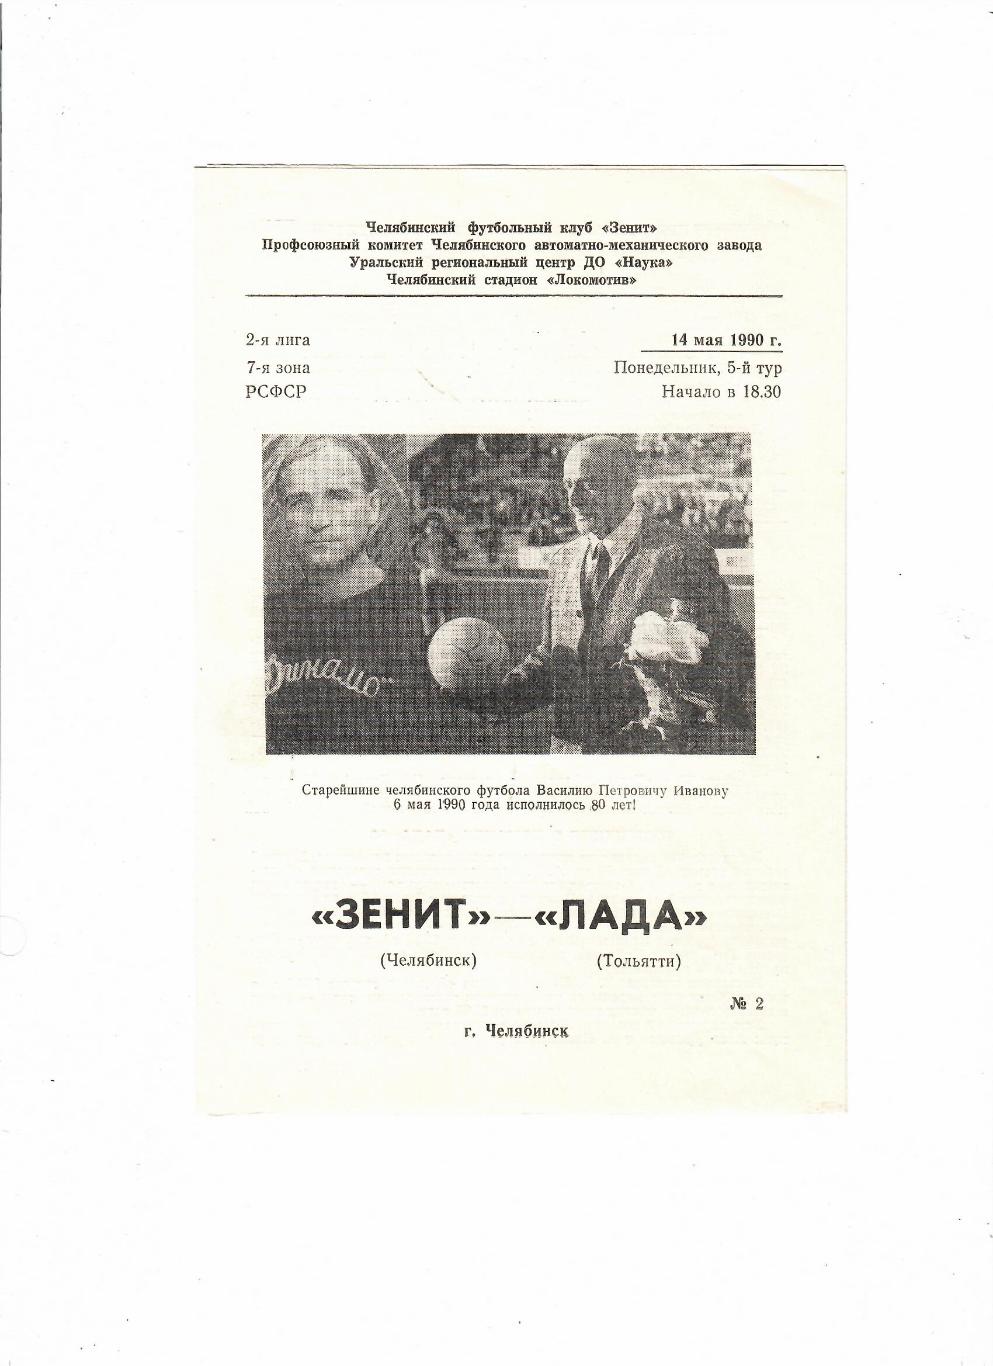 Зенит Челябинск-Лада Тольятти 1990